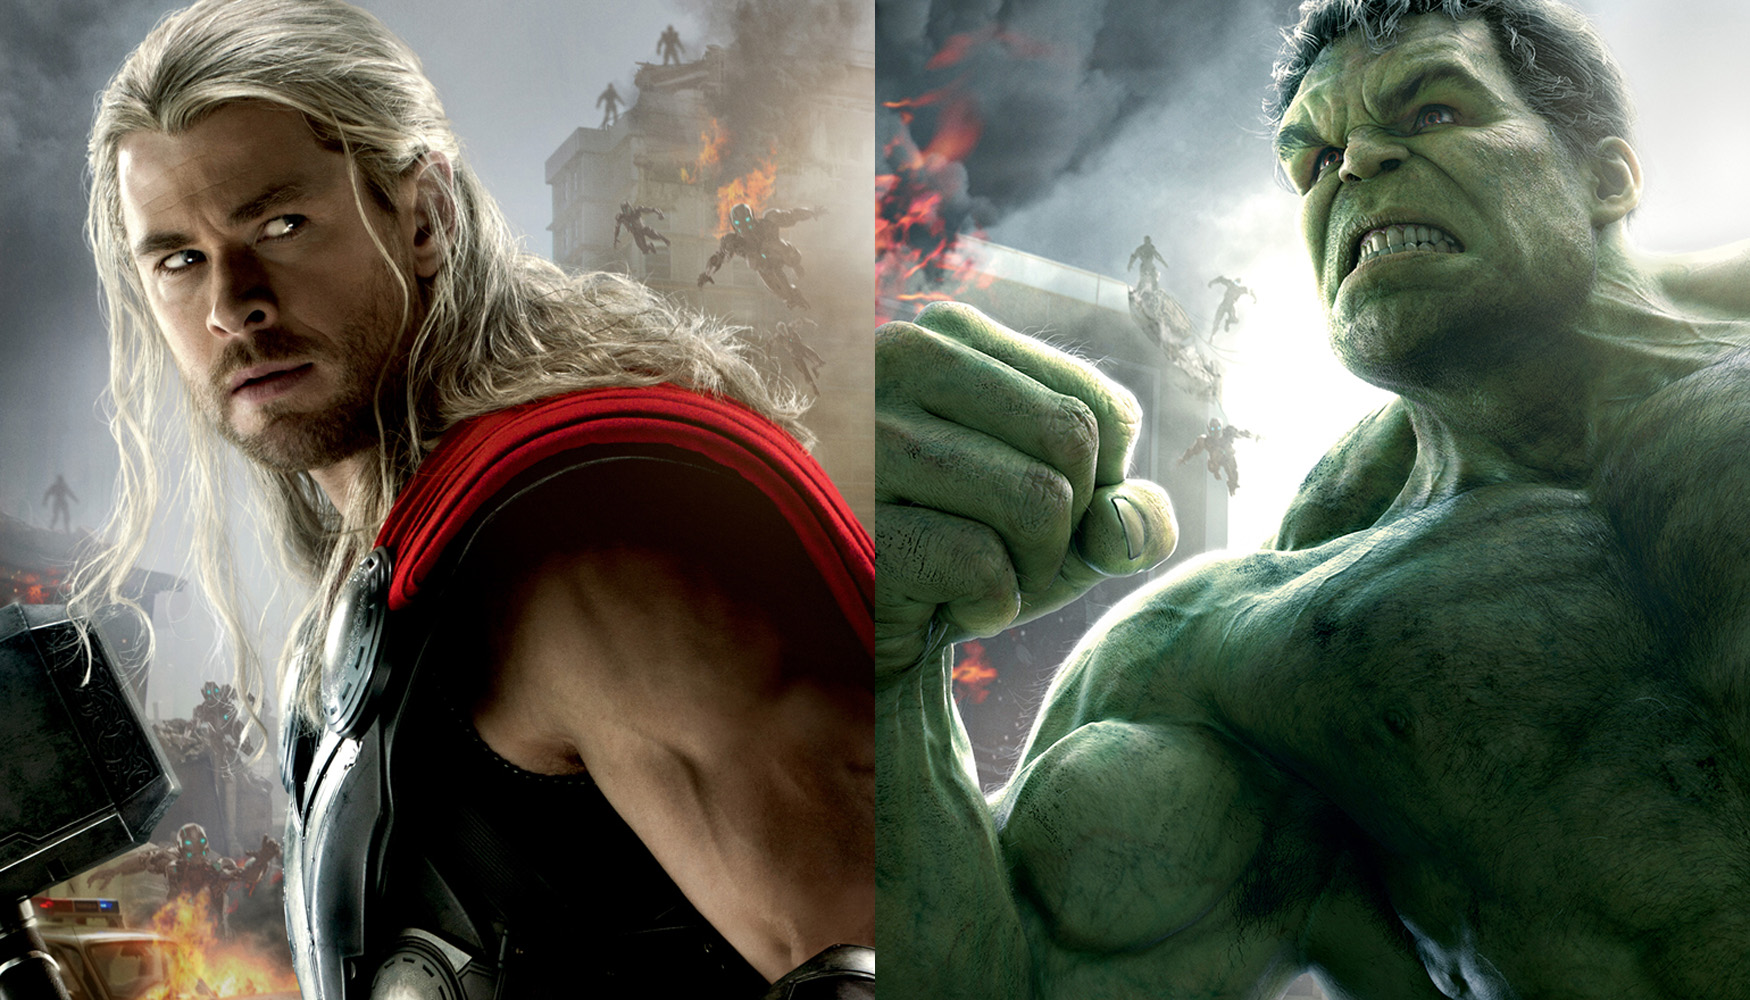 claro implícito comedia El gigante esmeralda Hulk aparecerá en Thor: Ragnarok - VGEzone